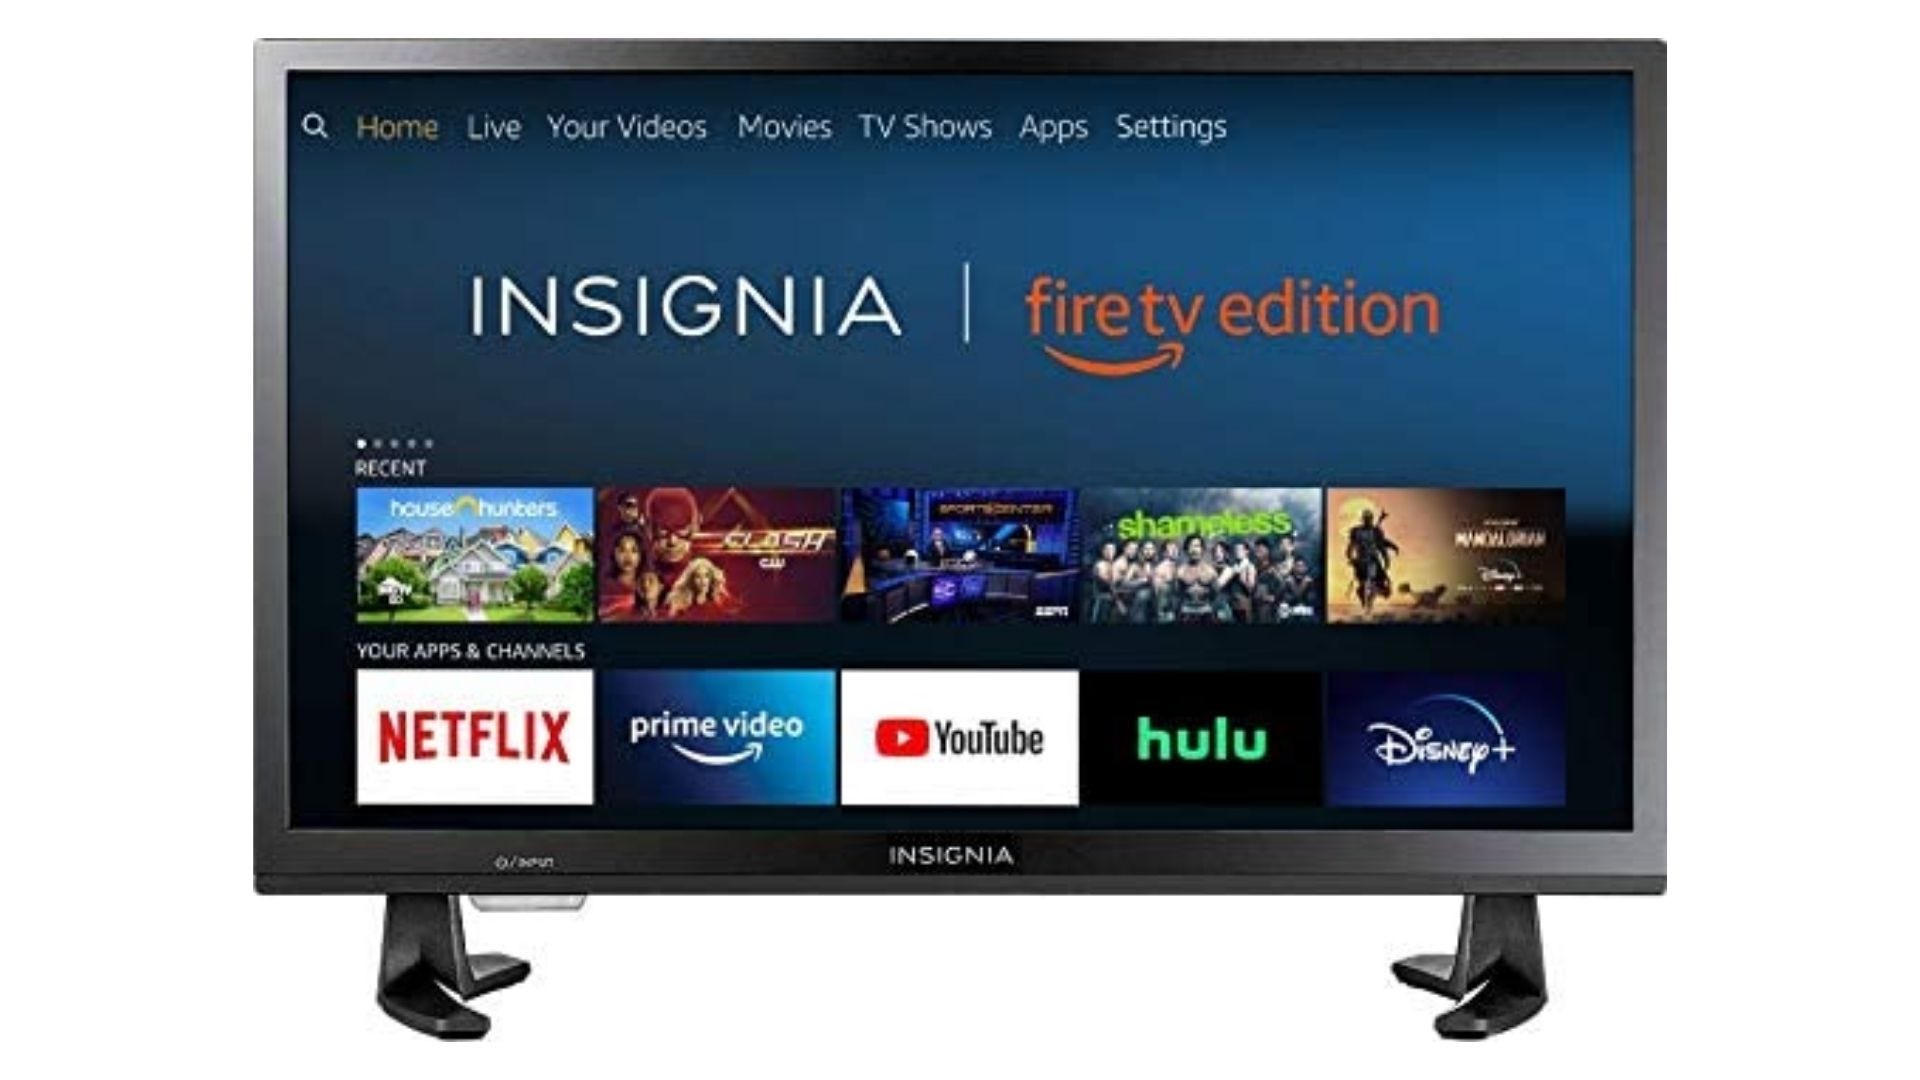 Insignia Smart HD TV 32 inch-Fire TV Edition